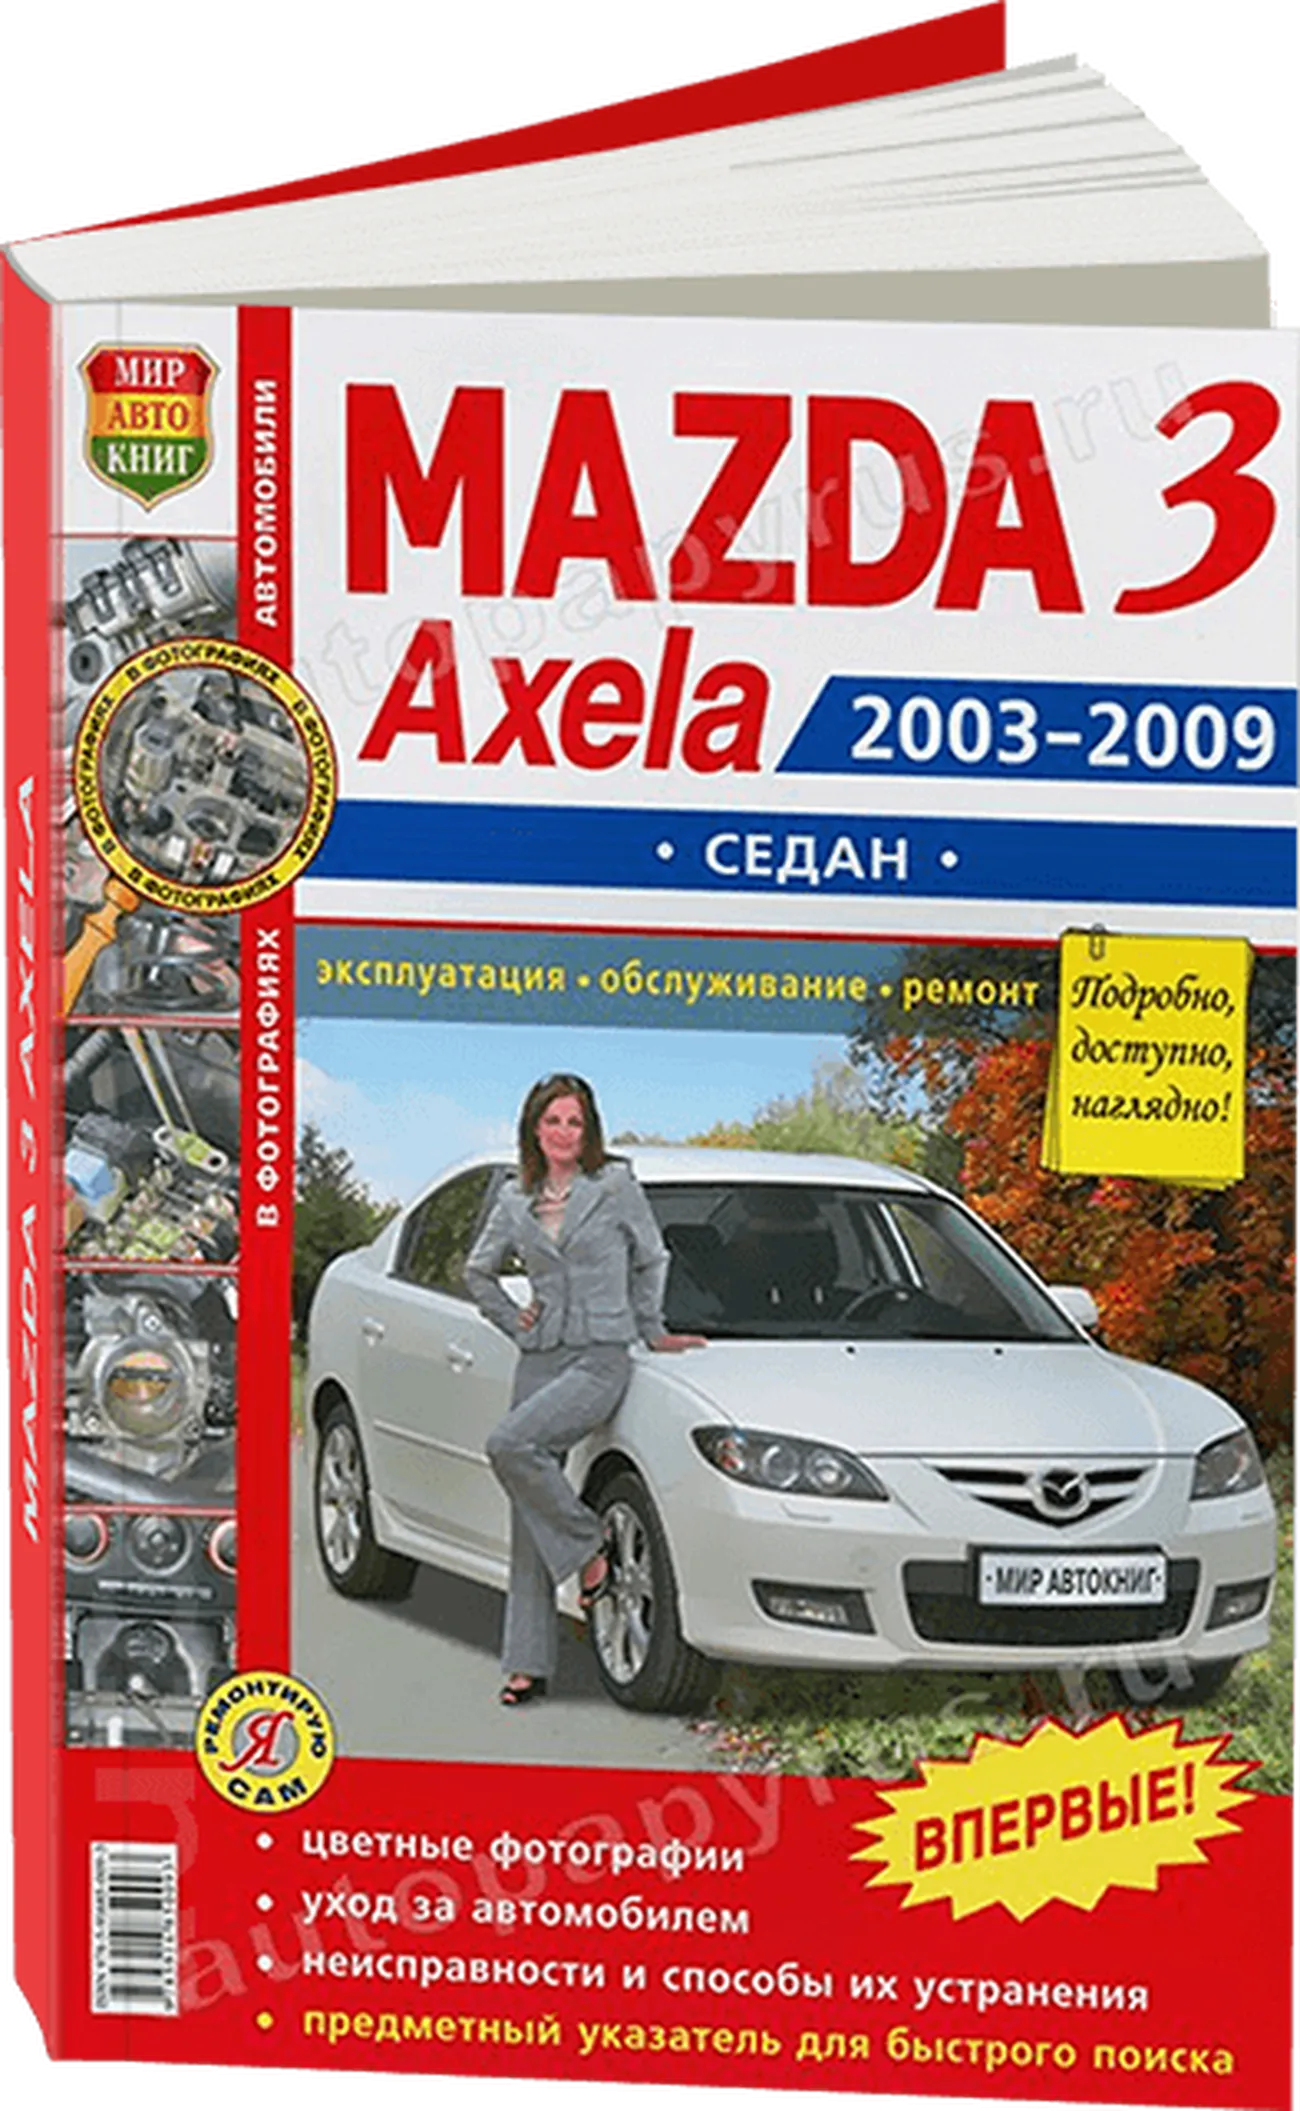 Книга: MAZDA 3 / AXELA (б) сед. 2003-2009 г.в., рем., экспл., то, ЦВЕТ. фото., сер. ЯРС | Мир Автокниг